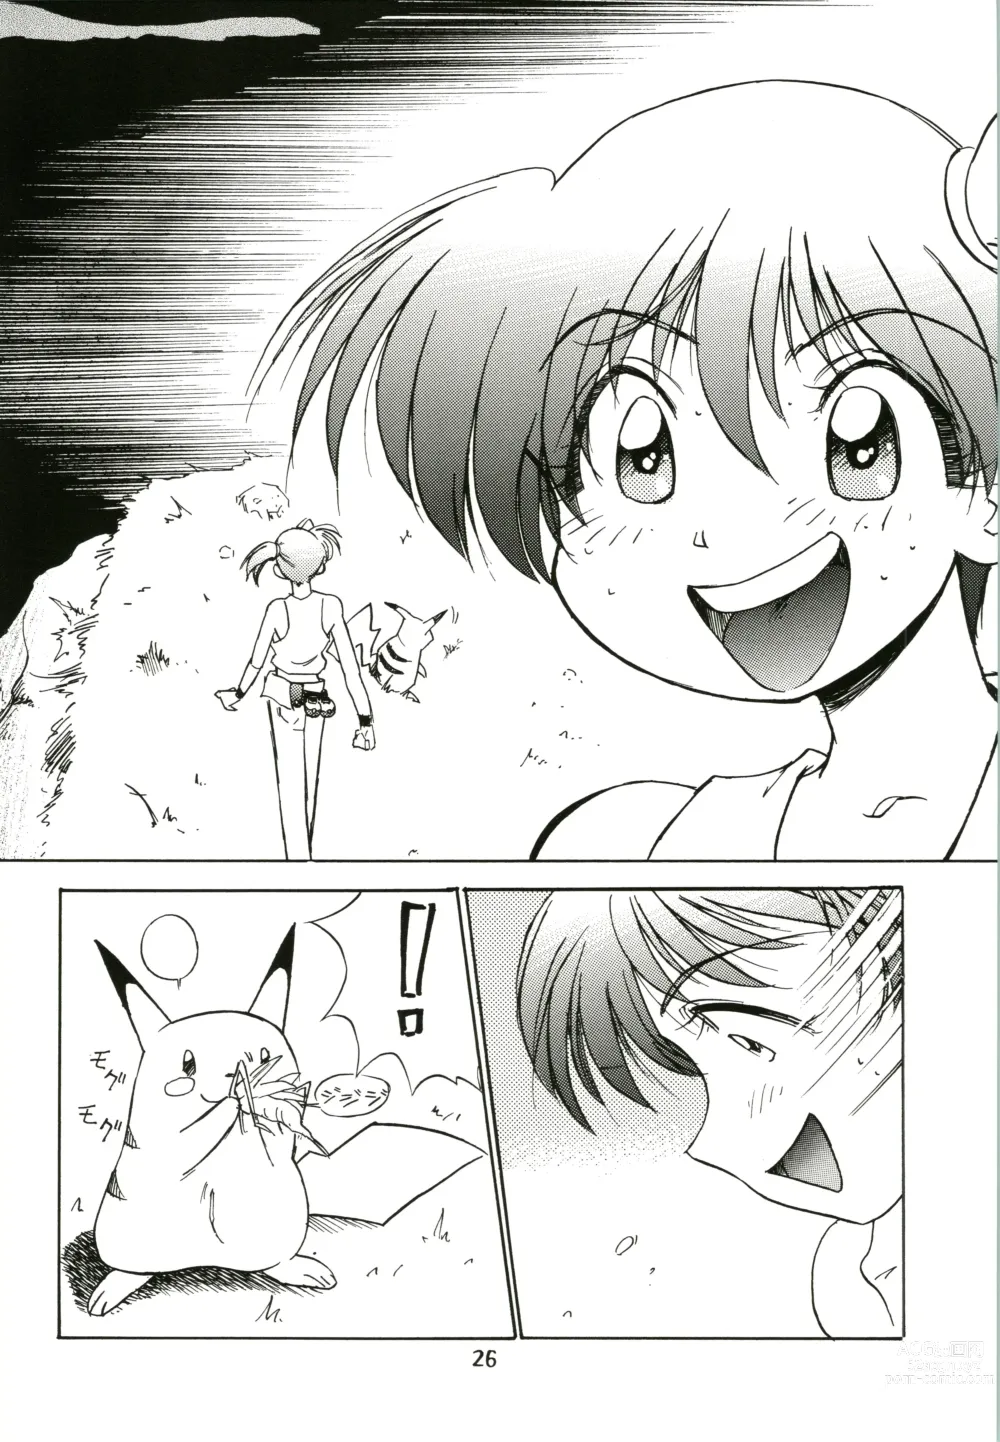 Page 26 of doujinshi Sakura Ame